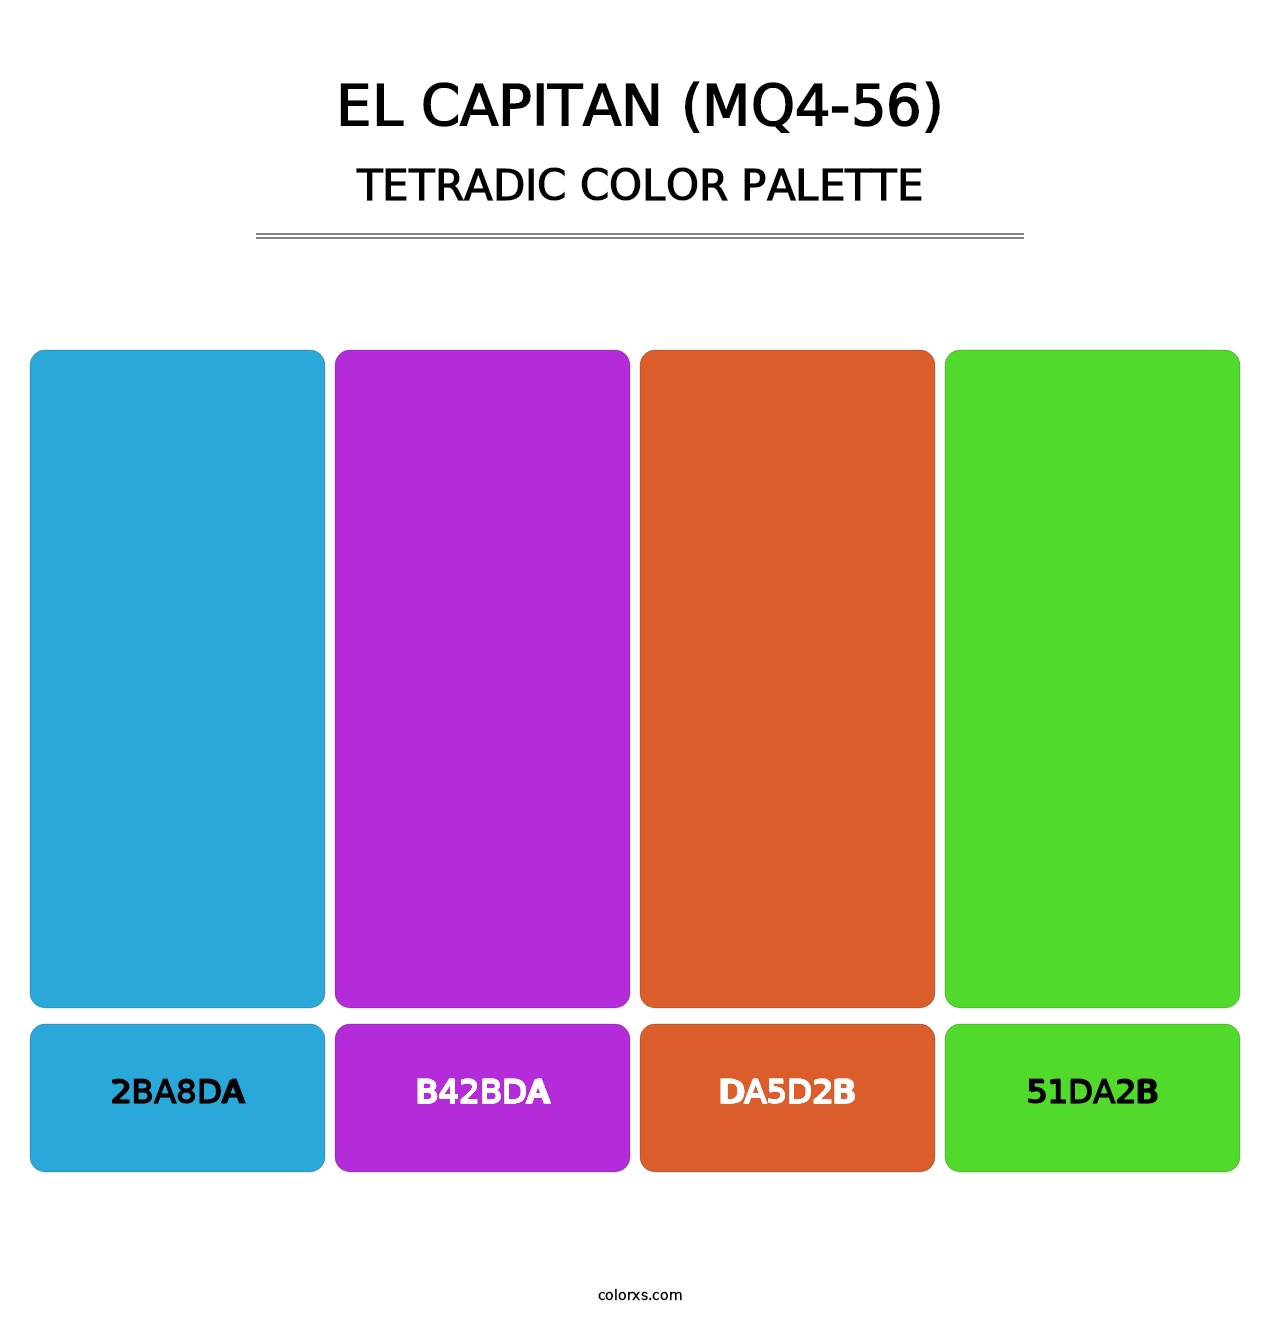 El Capitan (MQ4-56) - Tetradic Color Palette